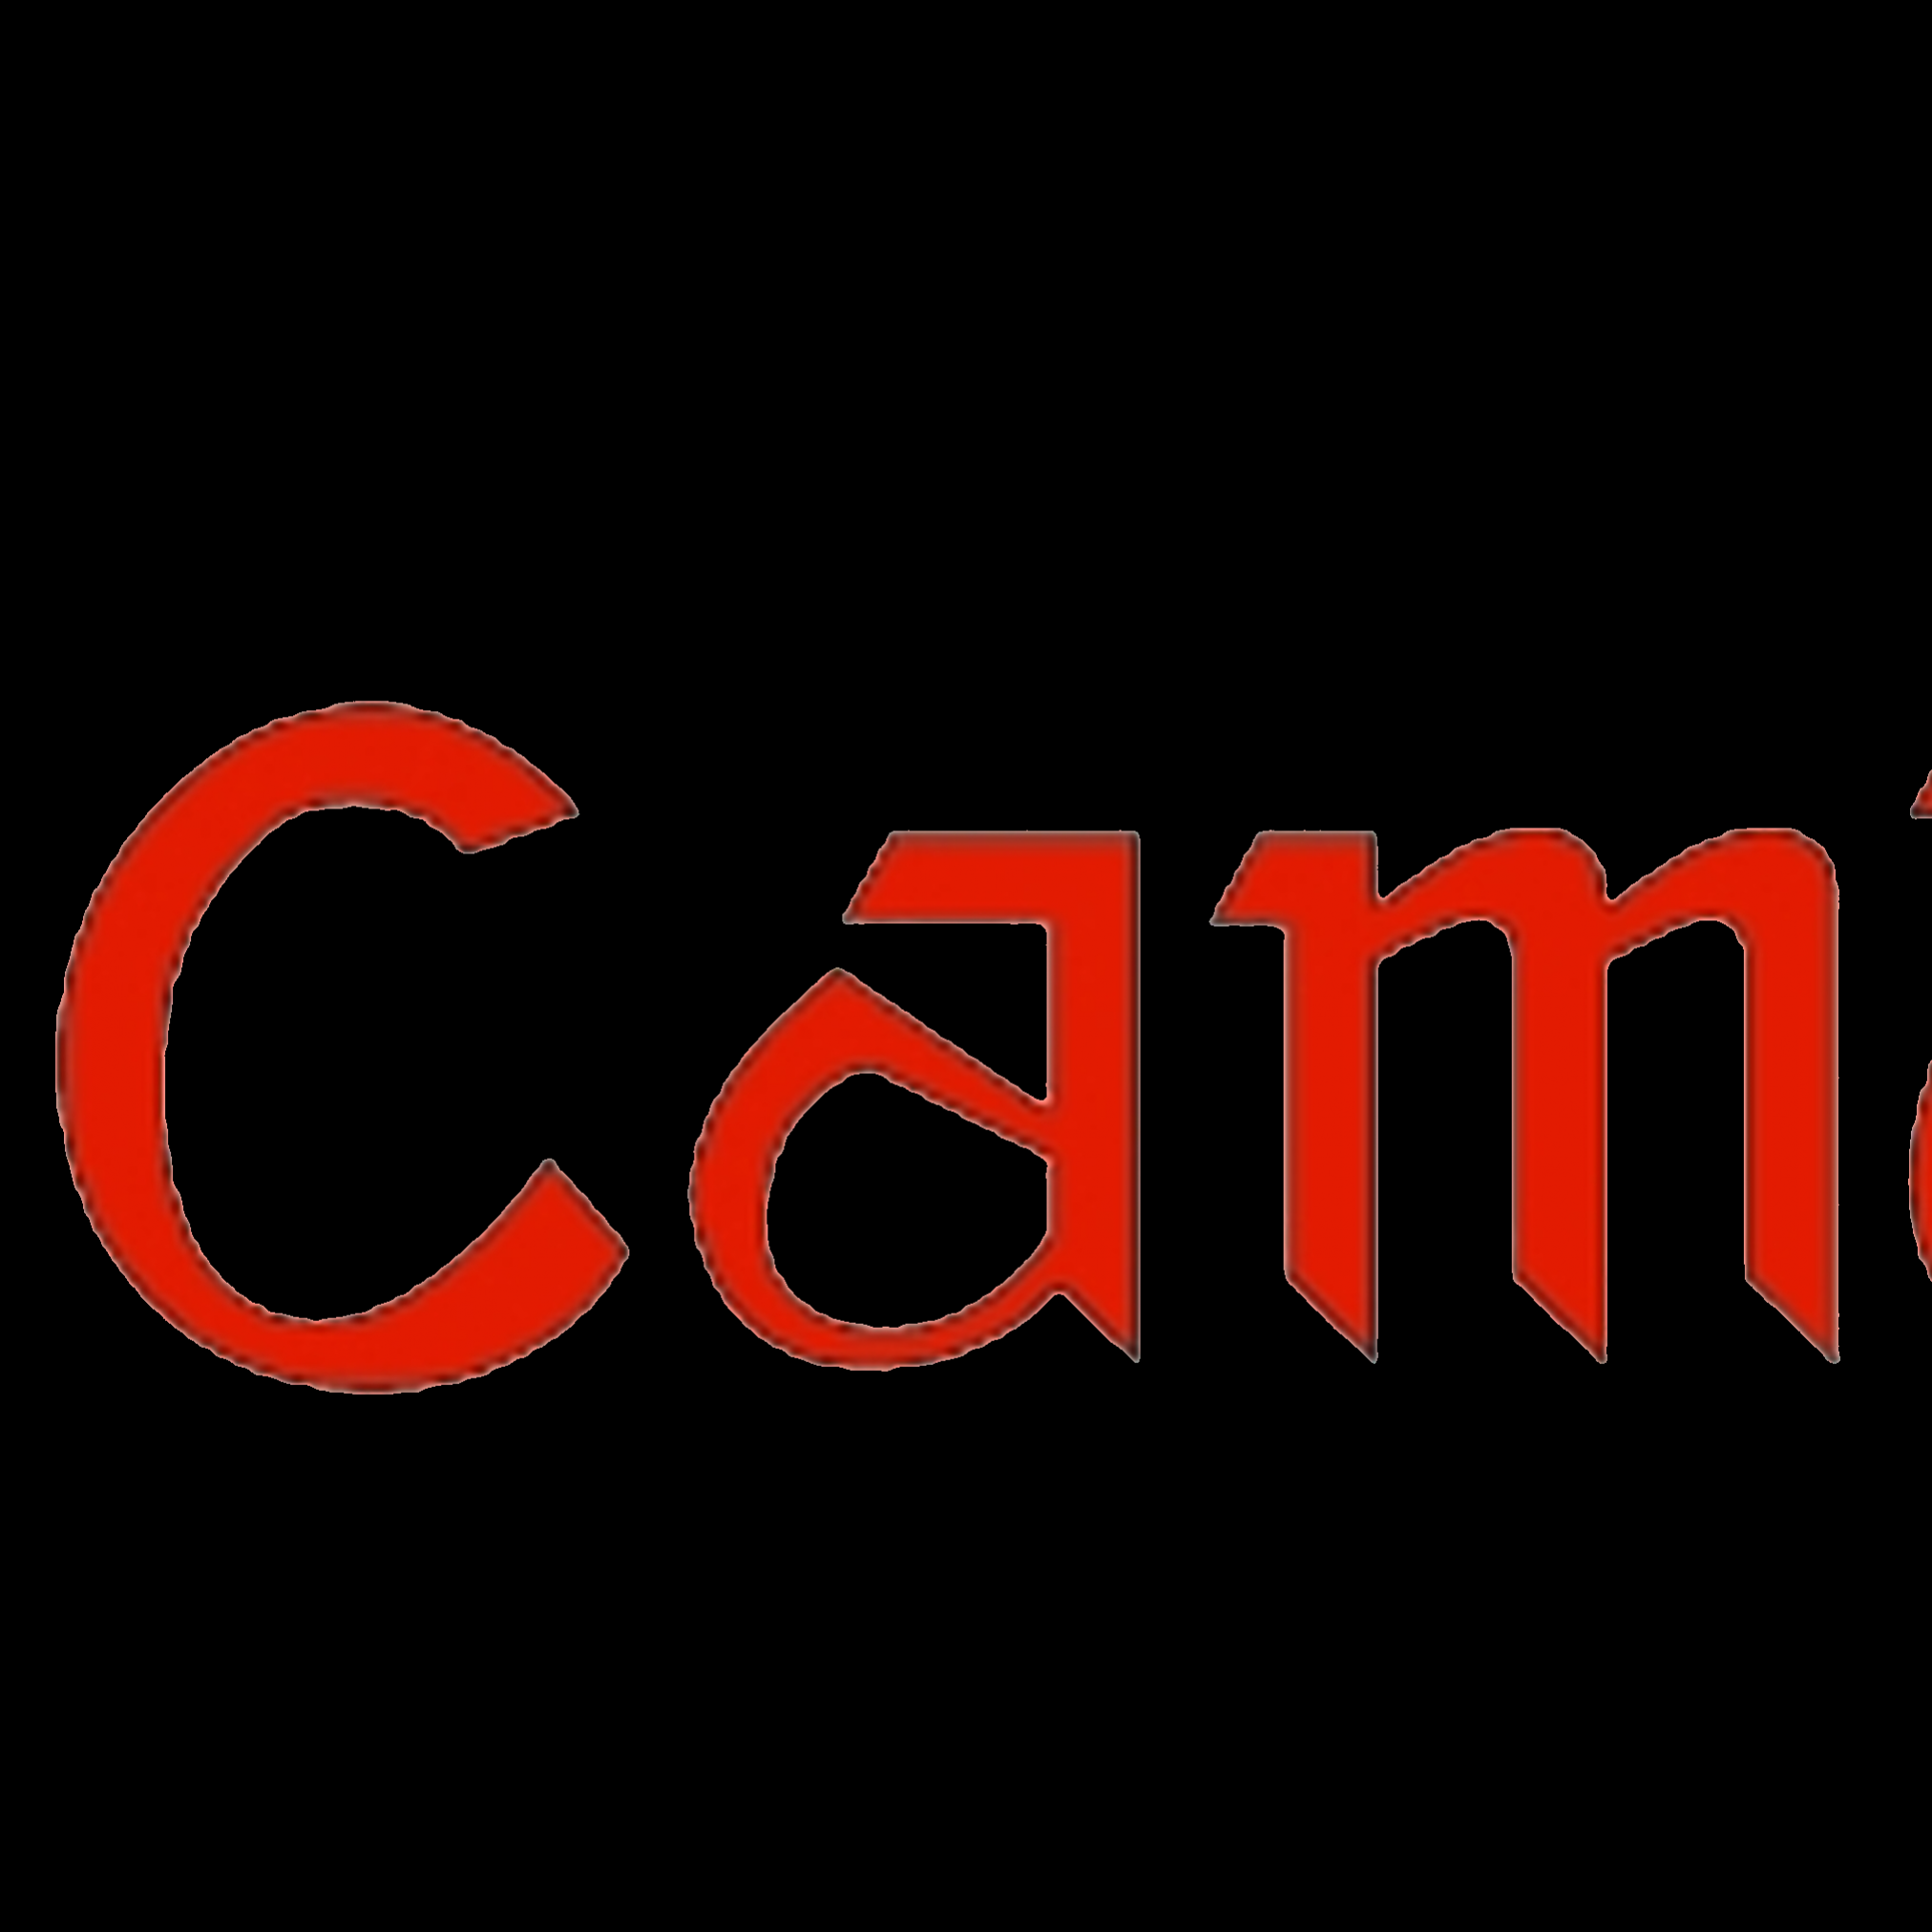 camyogi1